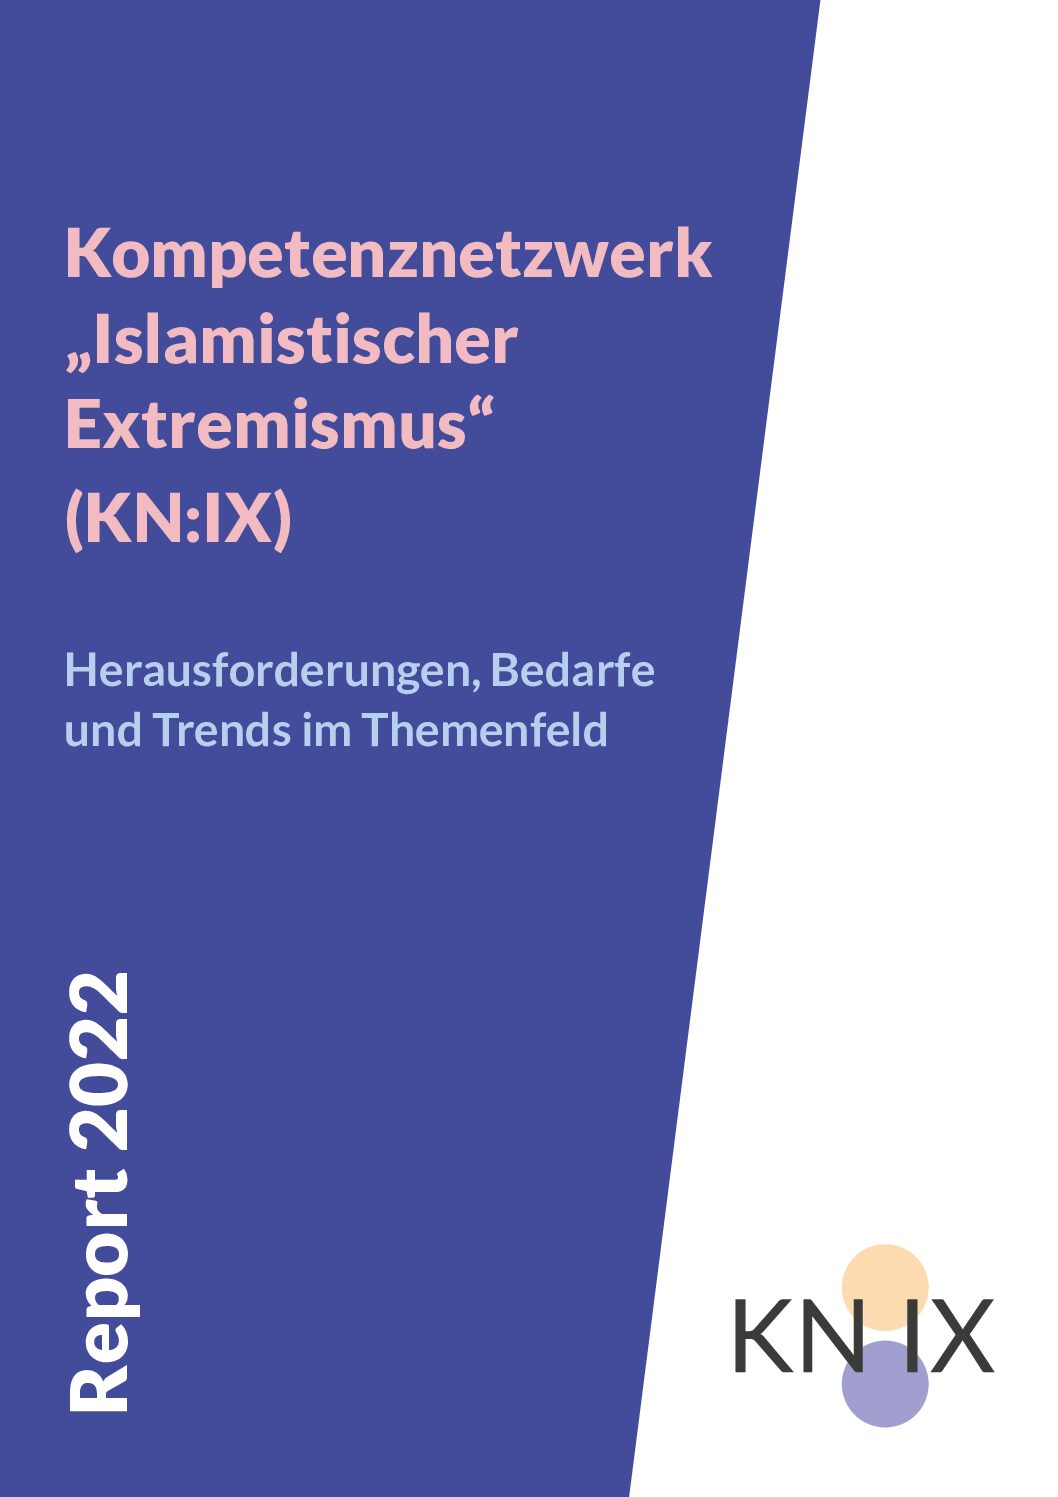 Au dem Bild steht Kompßetenznetzwerk "Islamistischer Extremismus KN:IX Report 2022